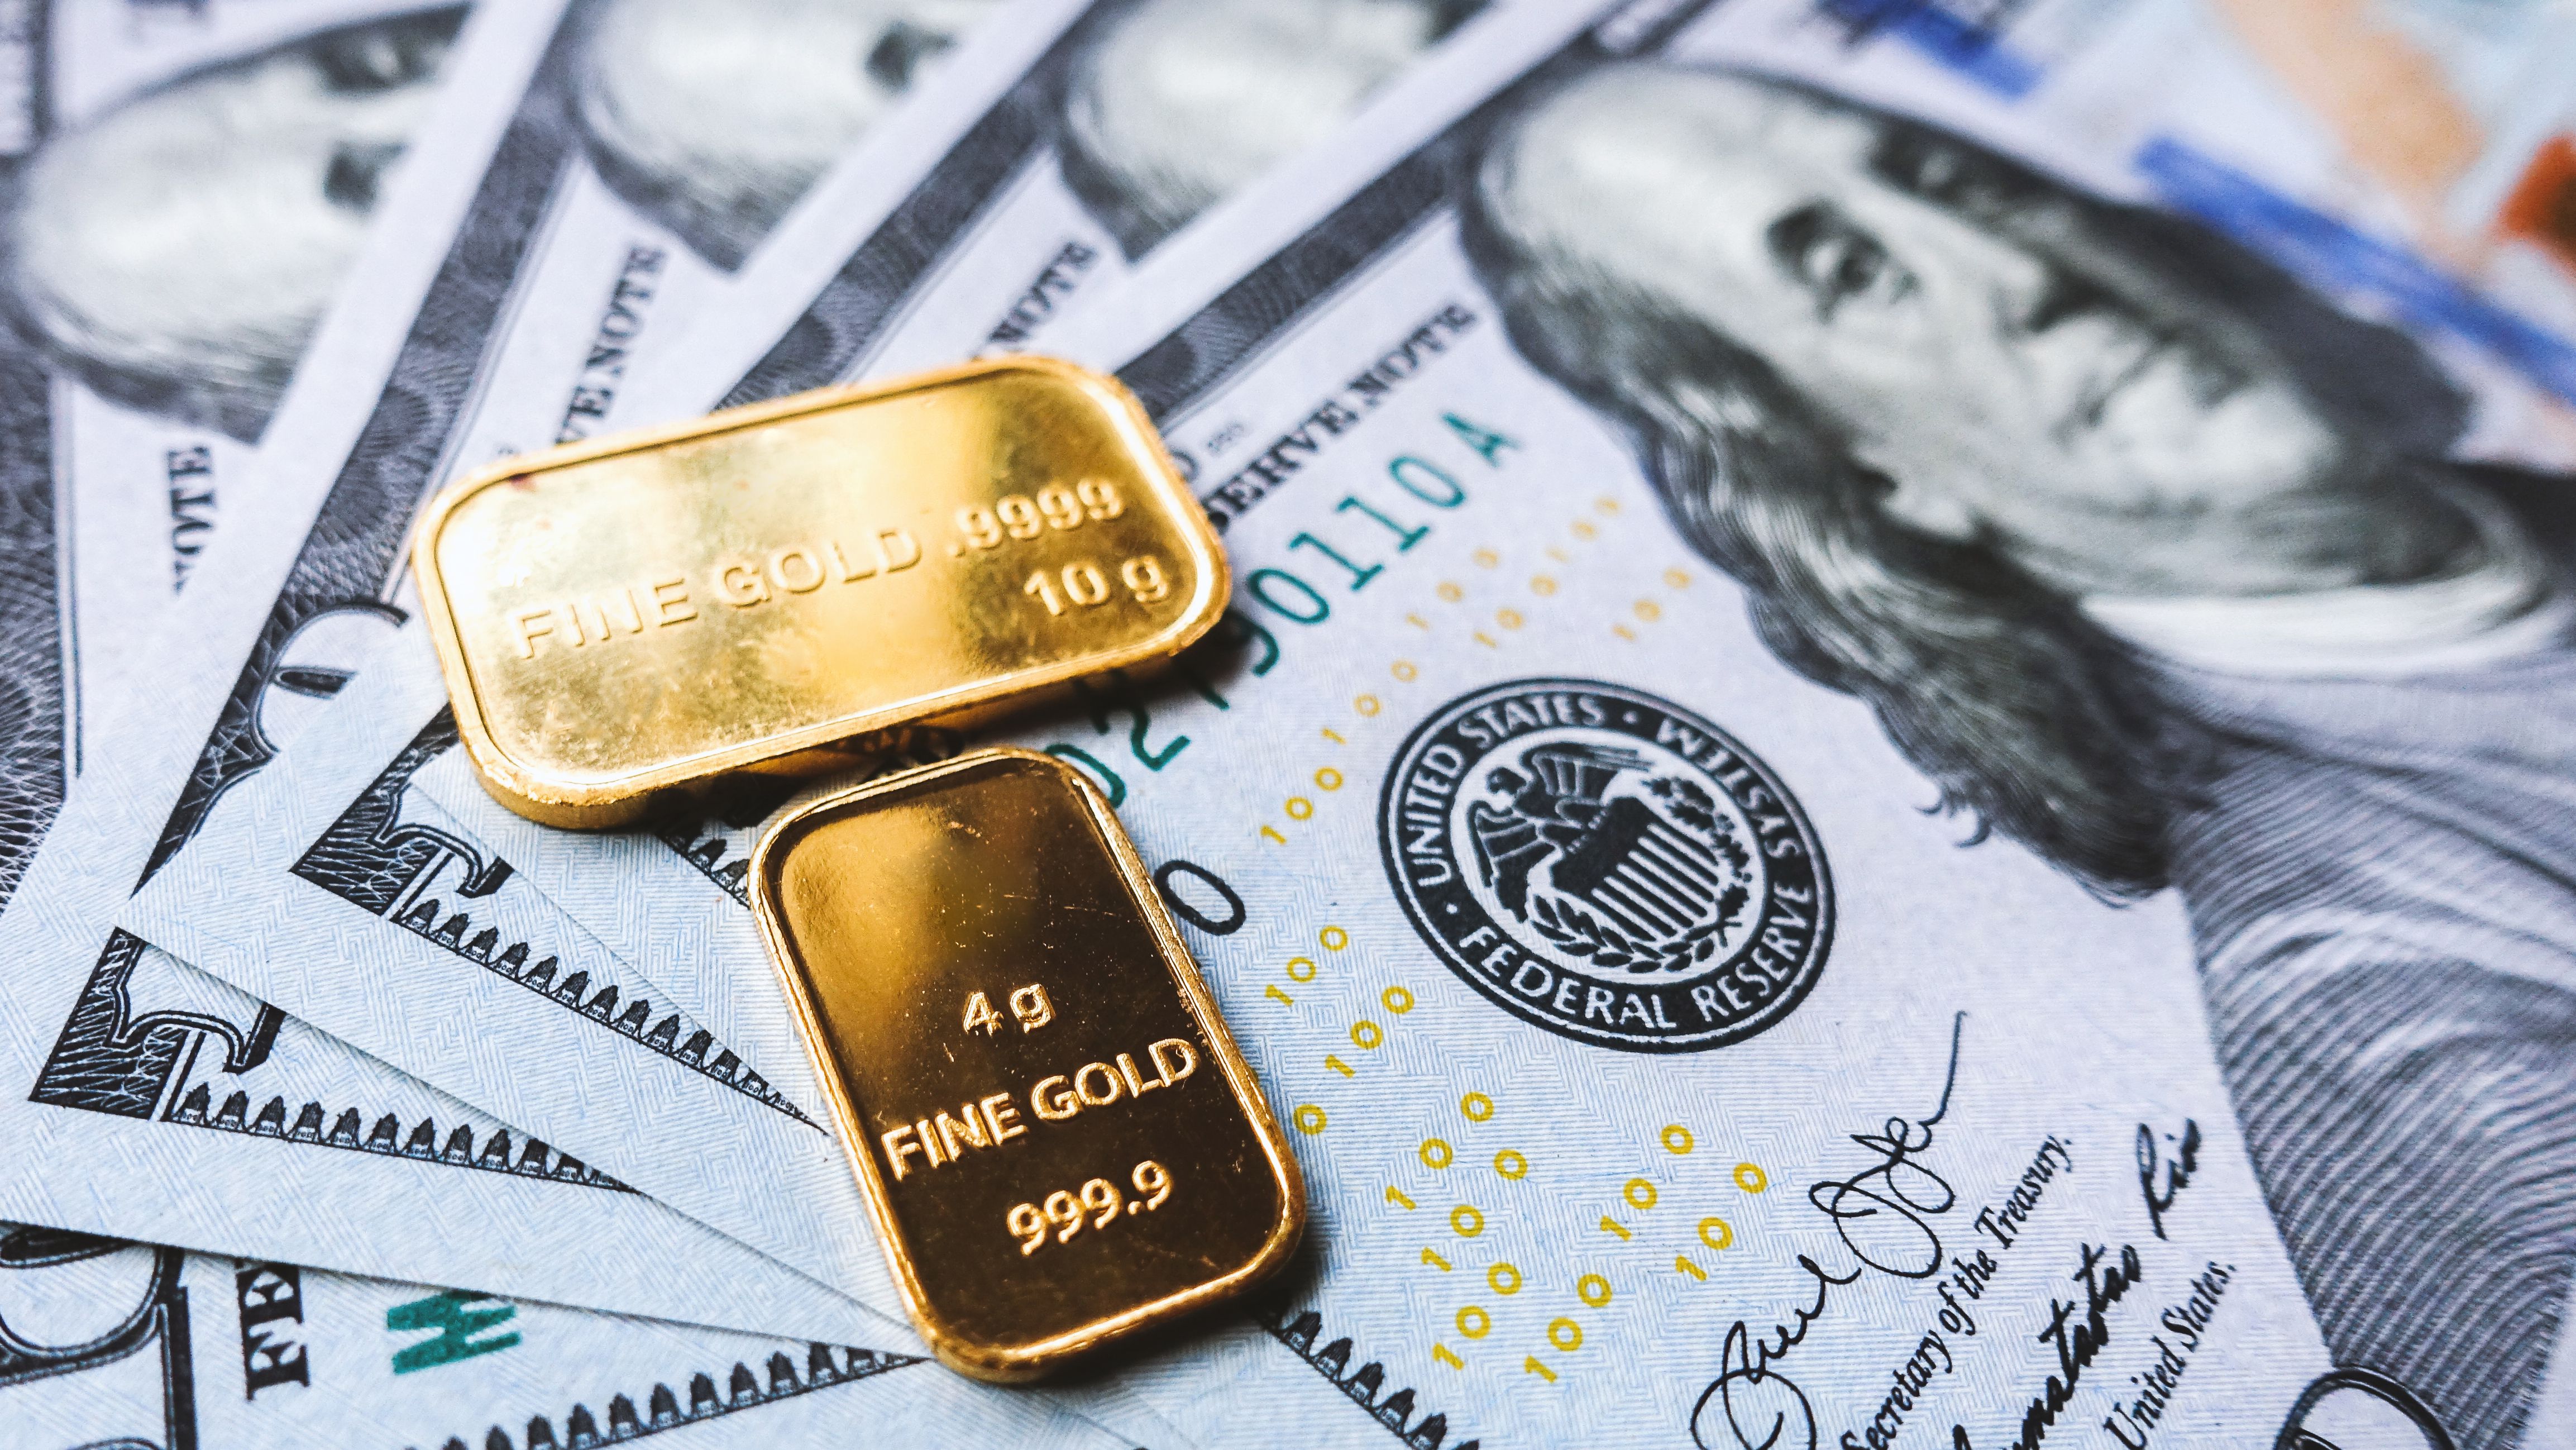 gold-bar-and-us-dollar-bills-2021-08-29-17-10-48-utc.jpg